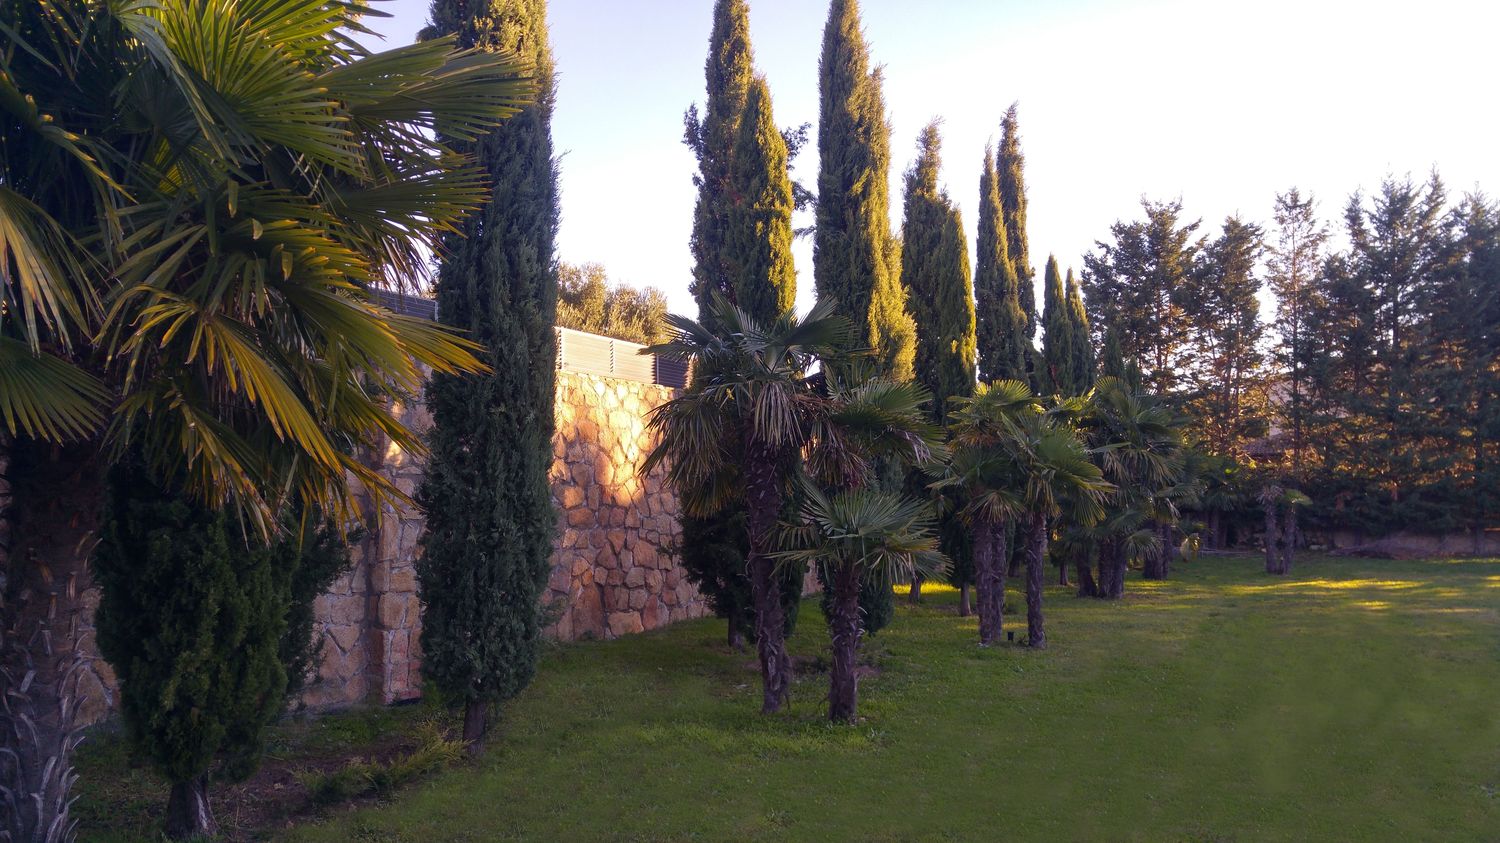 Vista del jardin con cipreses y palmeras